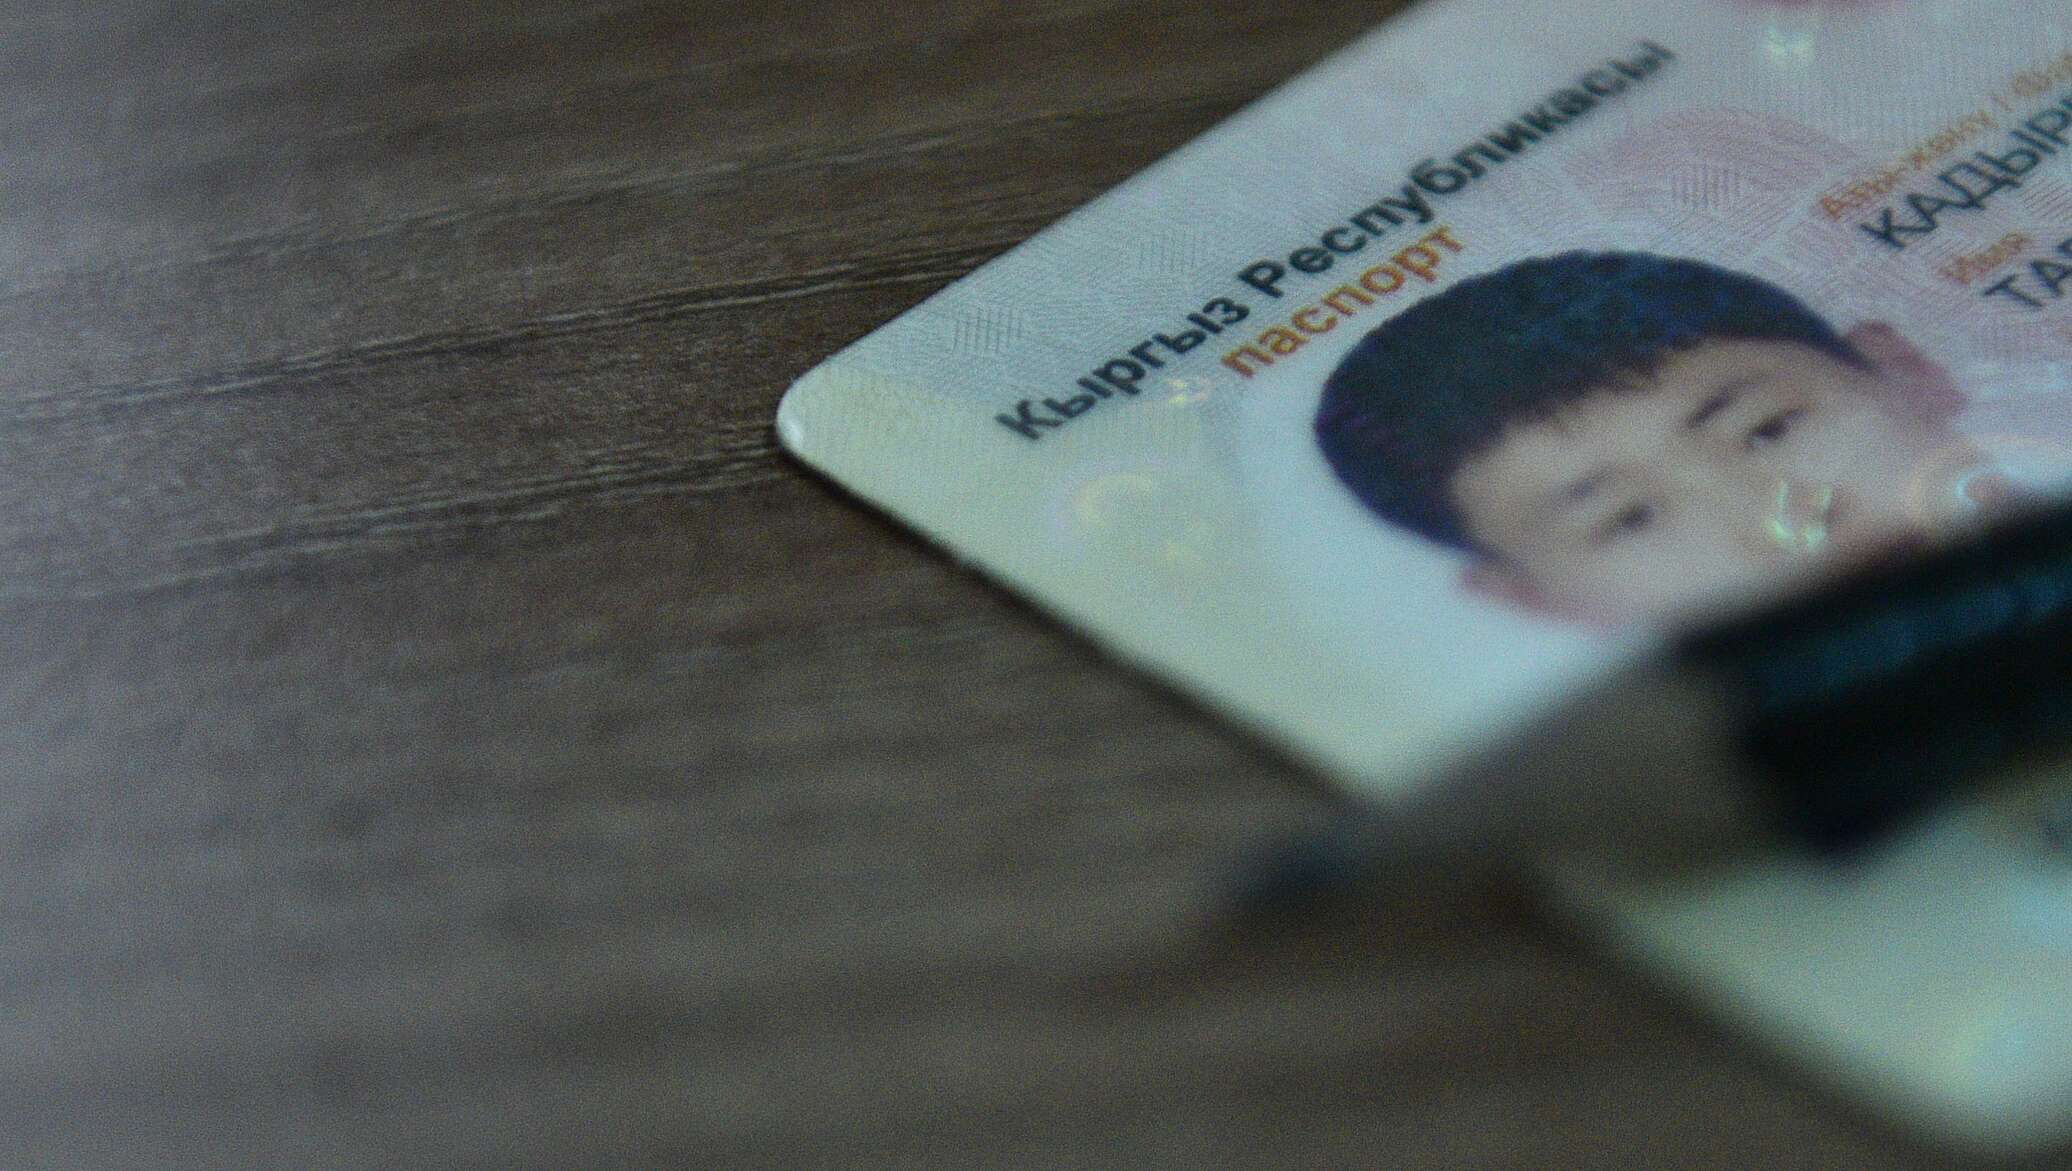 Где Можно Купить Кыргызский Паспорт